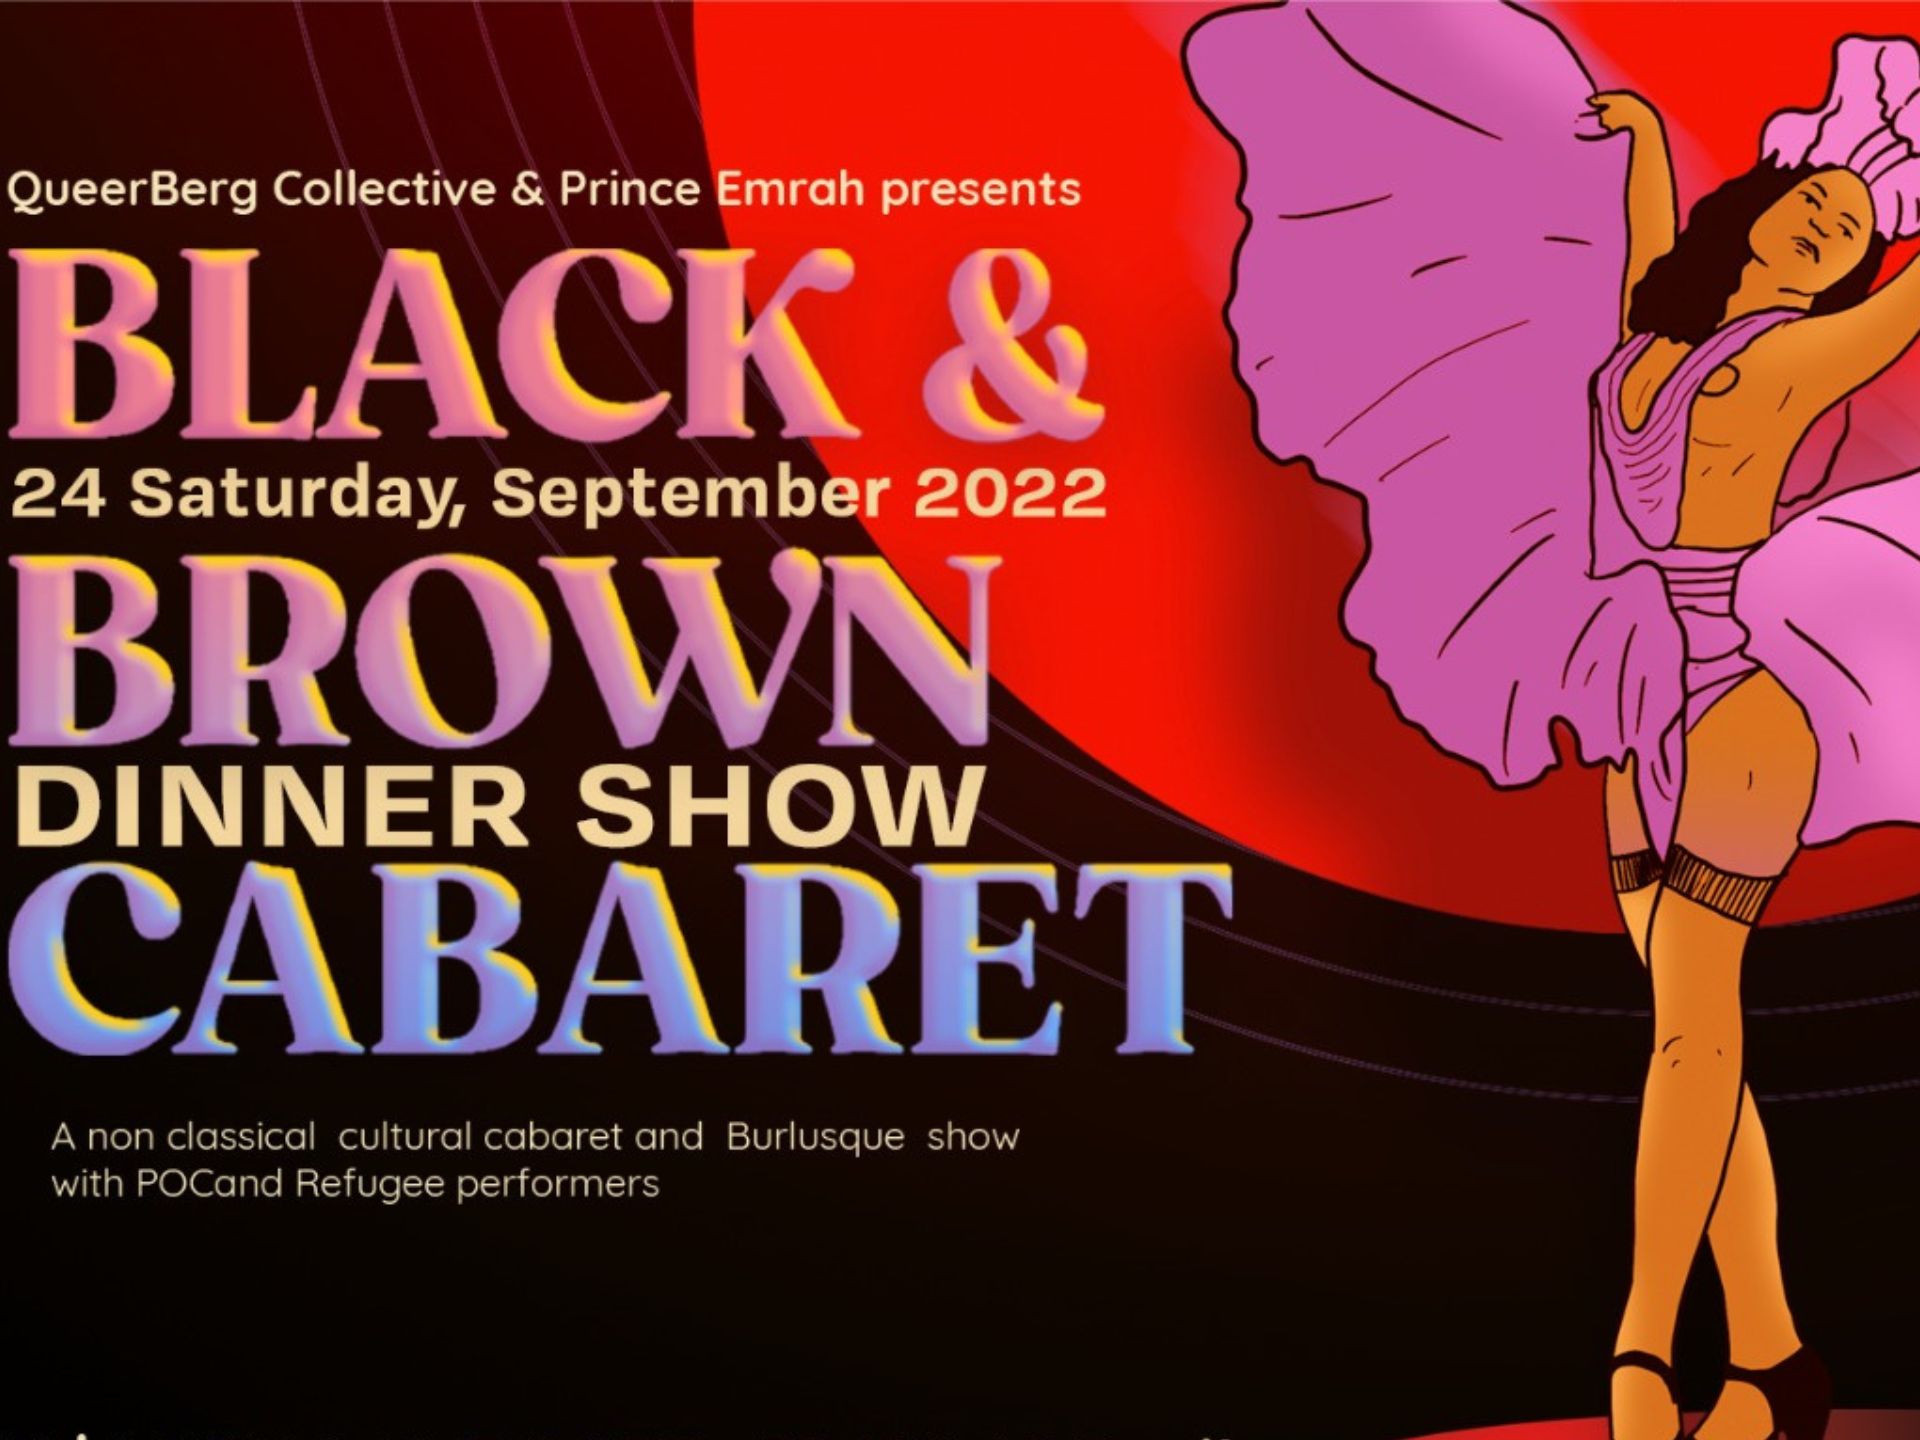 Black & Brown Cabaret Dinner Show